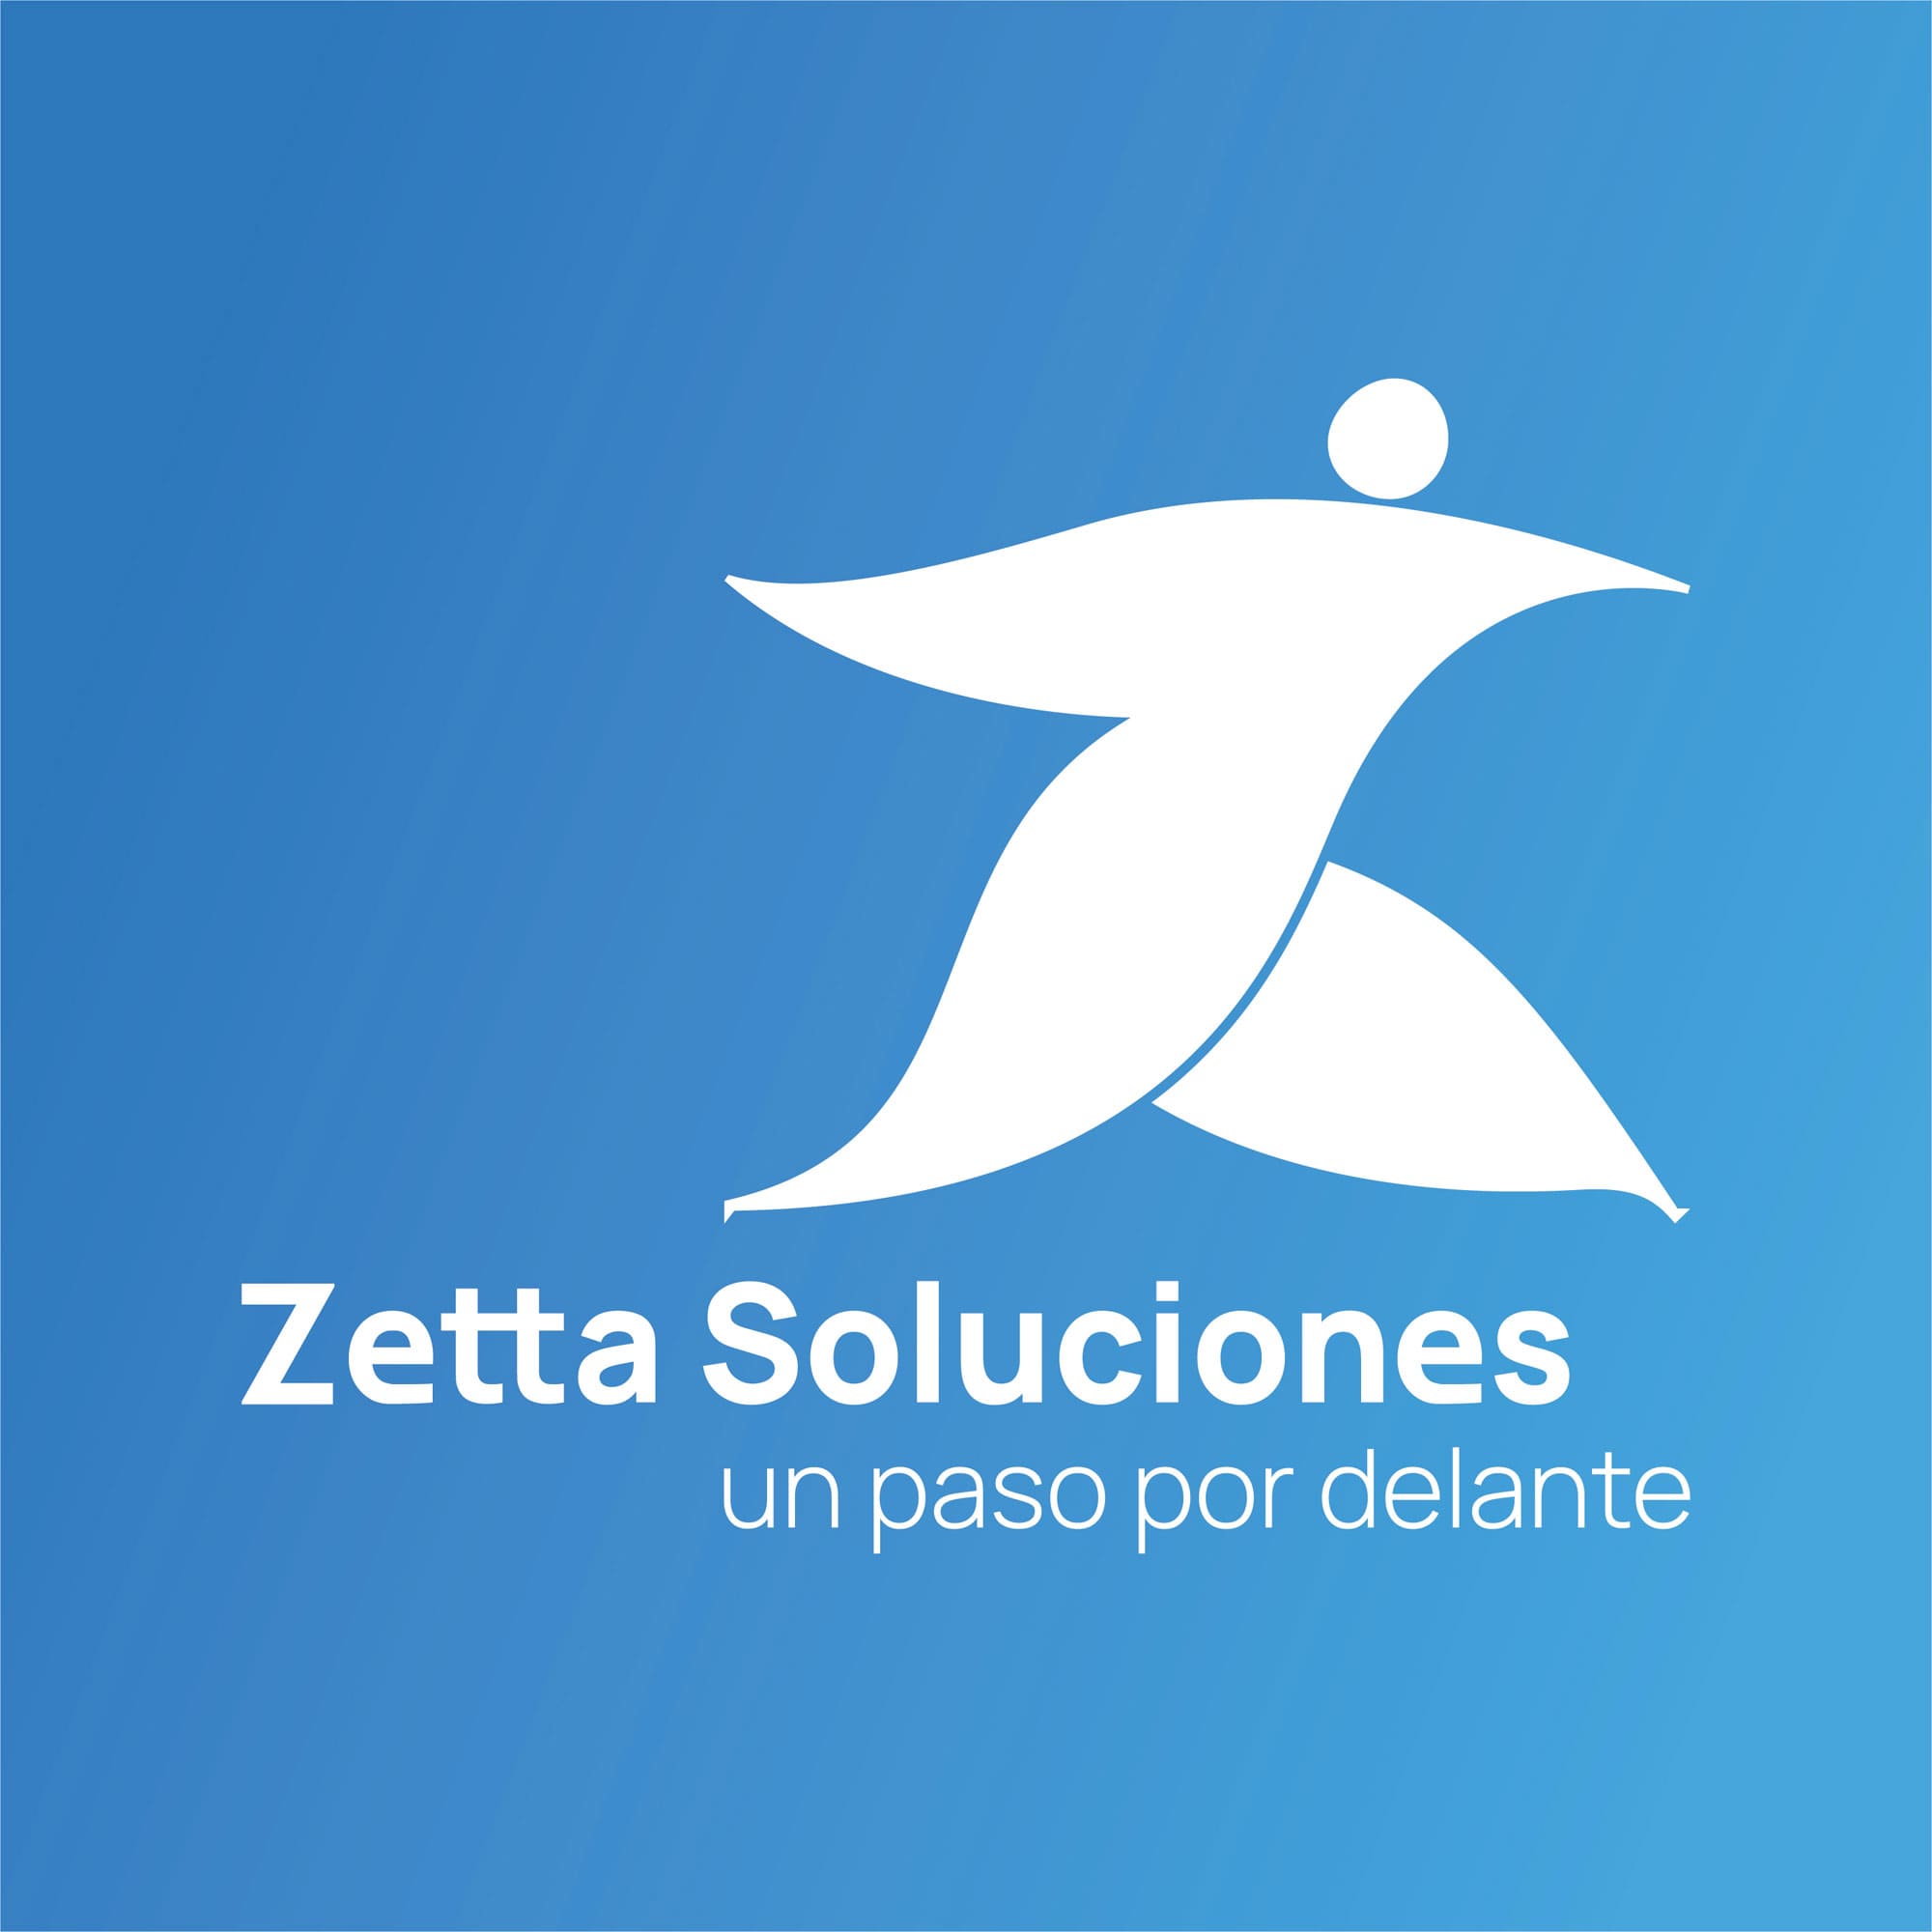 Logotipo en negativo de Zetta Soluciones, empresa de desarrollo de software.